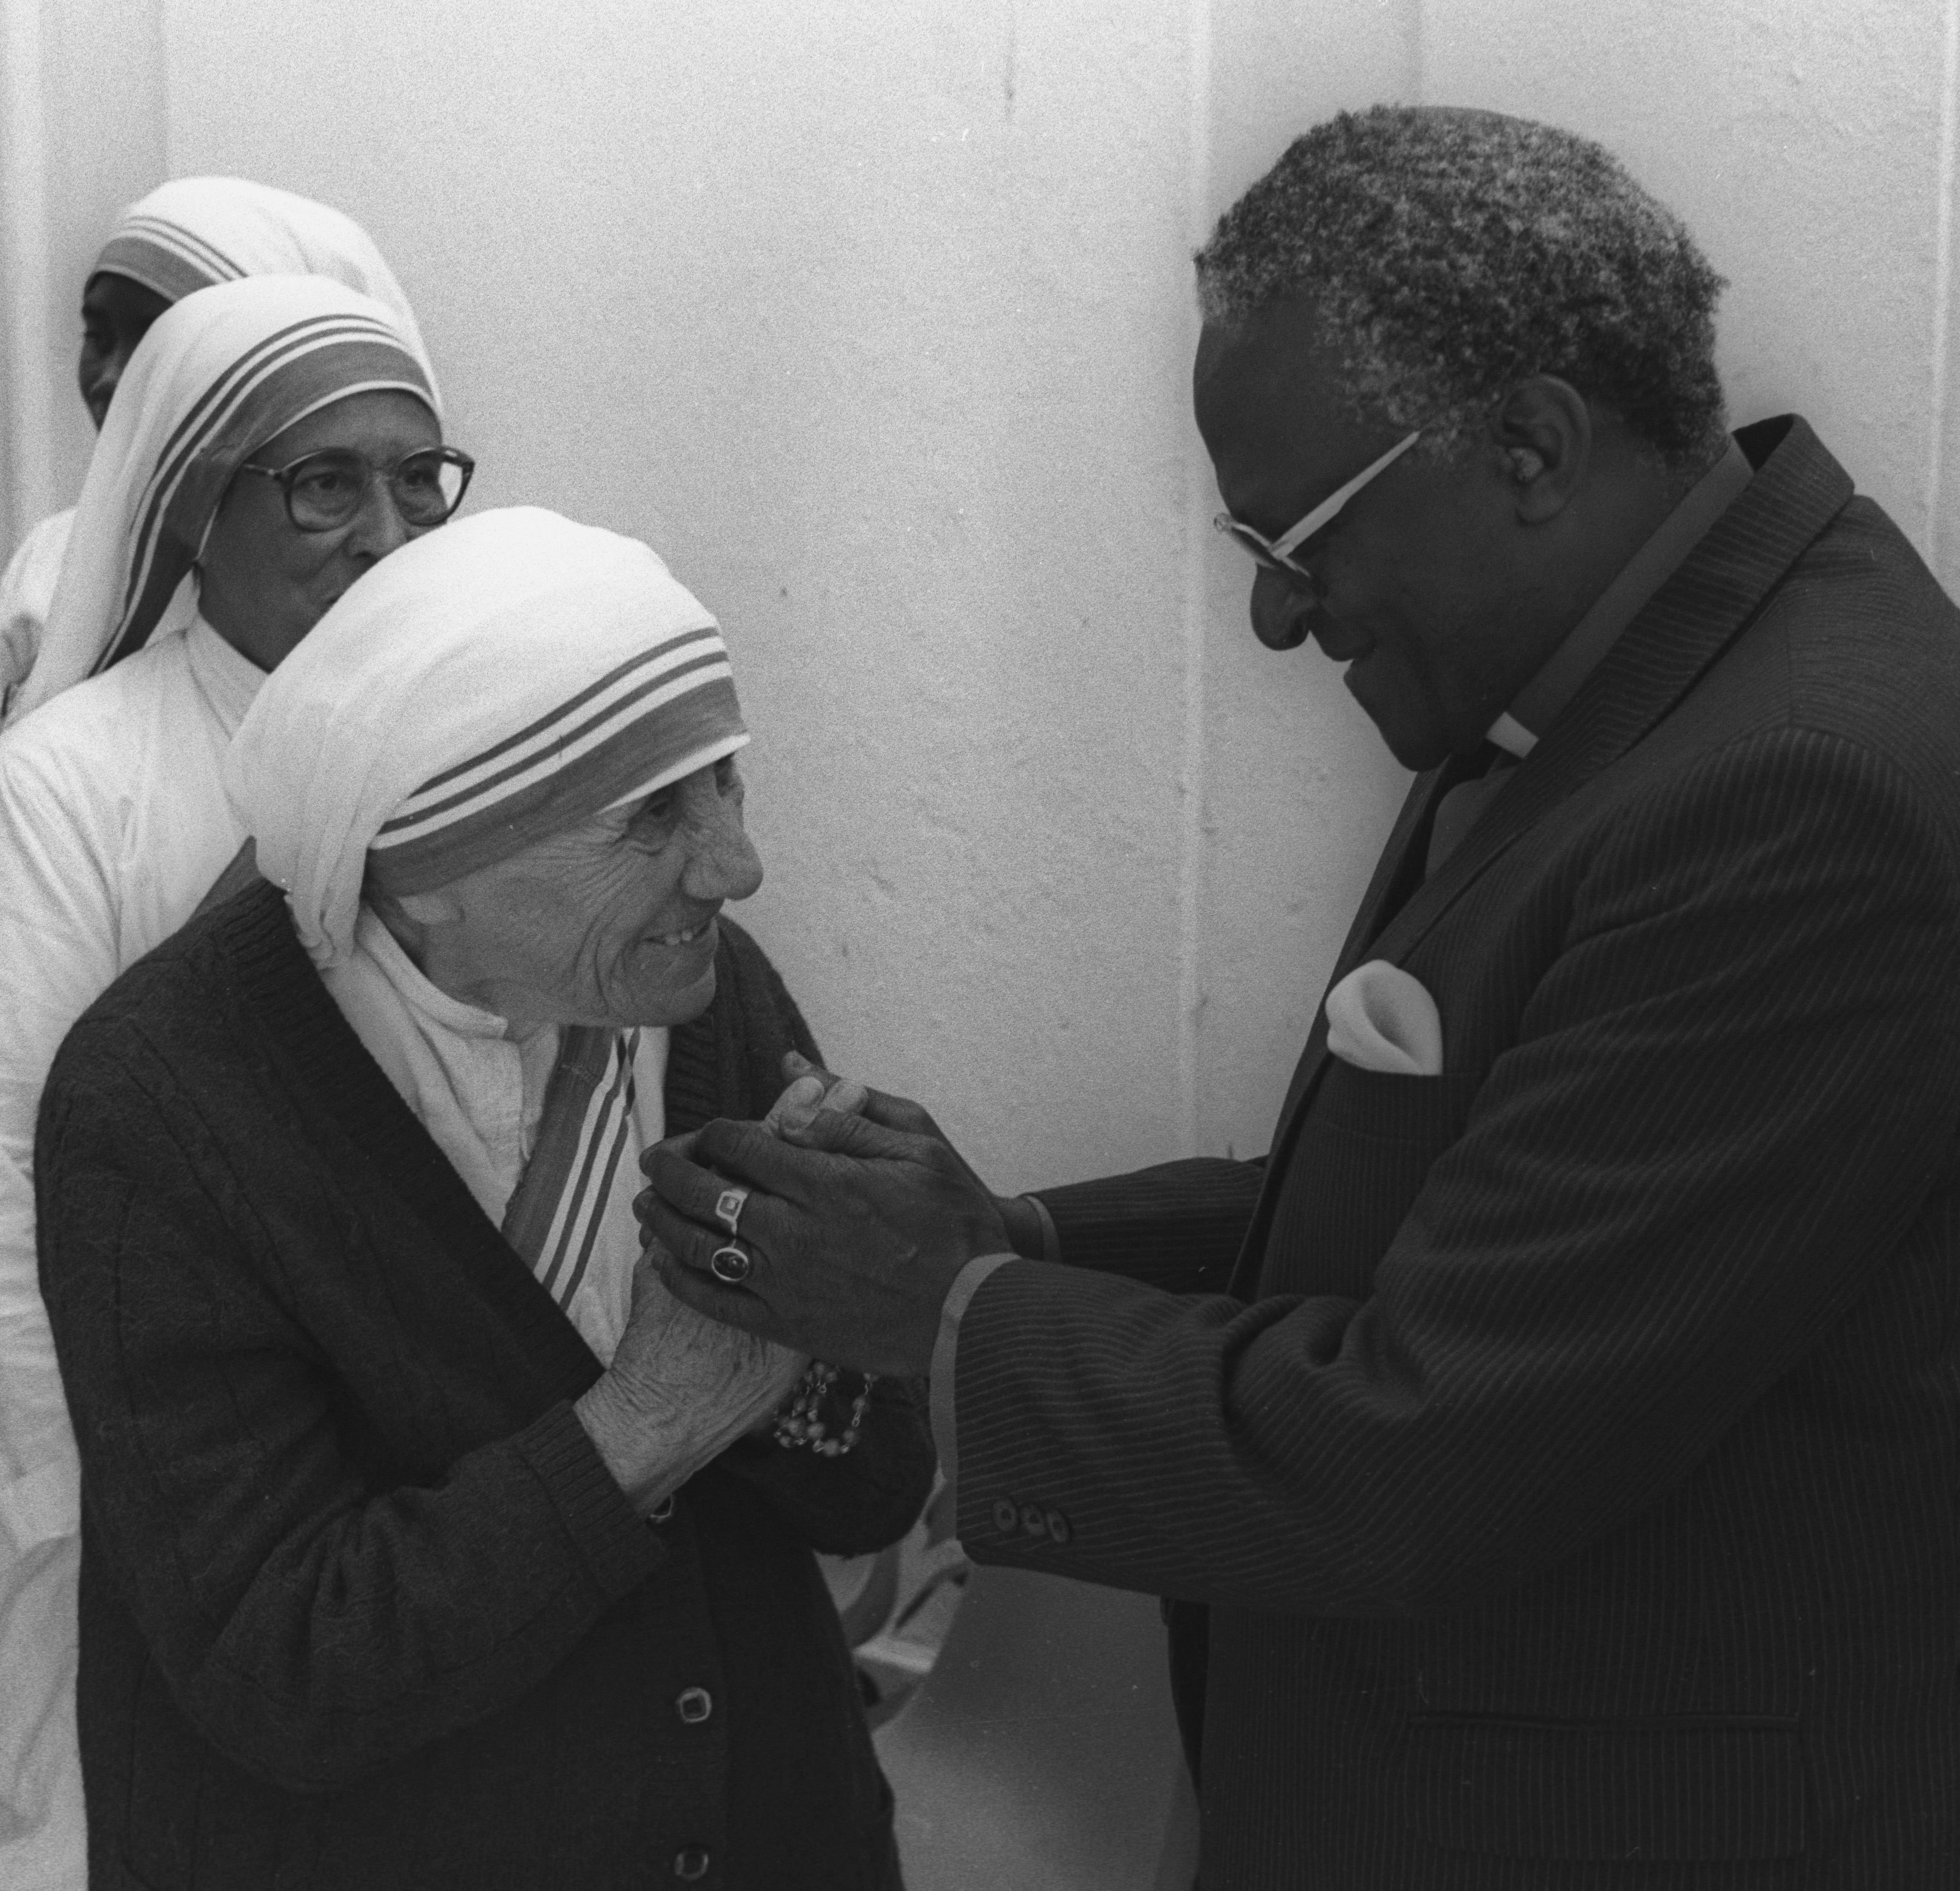 La Madre Teresa de Calcuta y el Arzobispo Desmond Tutu, ganadores del Premio Nobel de la Paz, se reúnen antes de un almuerzo en Ciudad del Cabo, Sudáfrica, el 10 de noviembre de 1988 (REUTERS/Ulli Michel/File Photo)